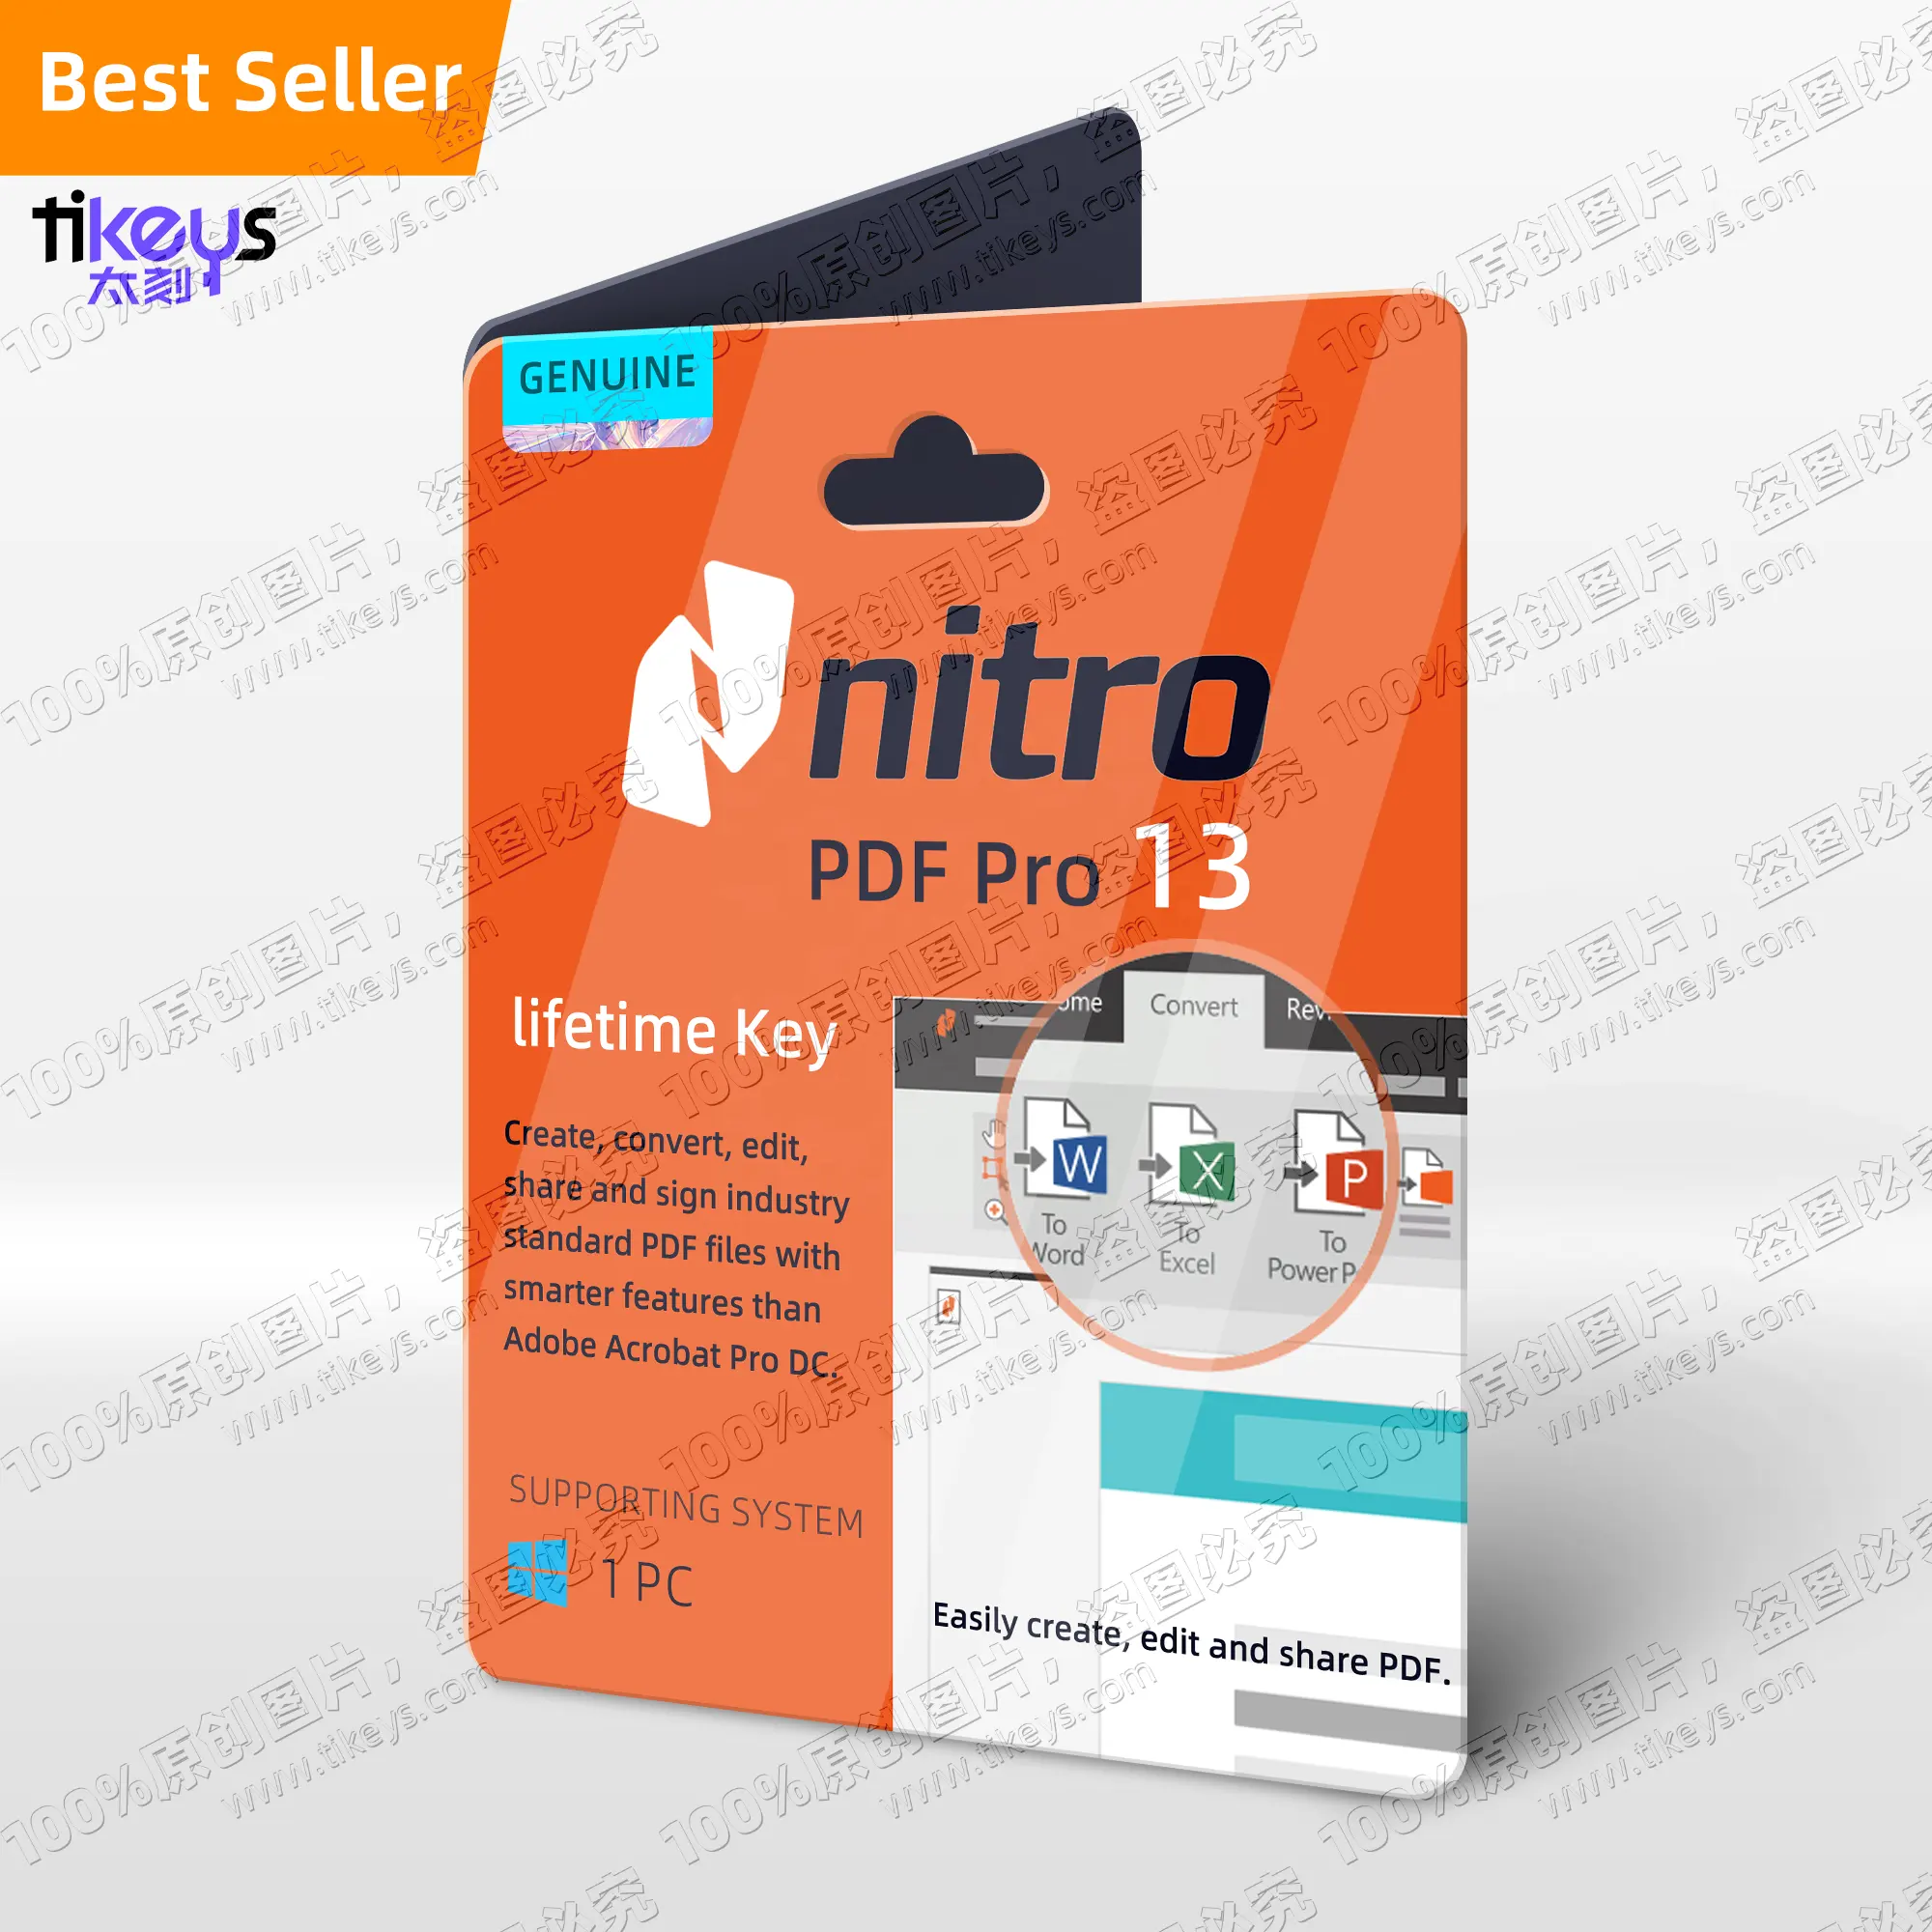 24/7ออนไลน์ Nitro PDF Pro 13อย่างเป็นทางการของแท้ใบอนุญาตของแท้เปิดใช้งานออนไลน์ซอฟต์แวร์แก้ไขตลอดอายุการใช้งาน